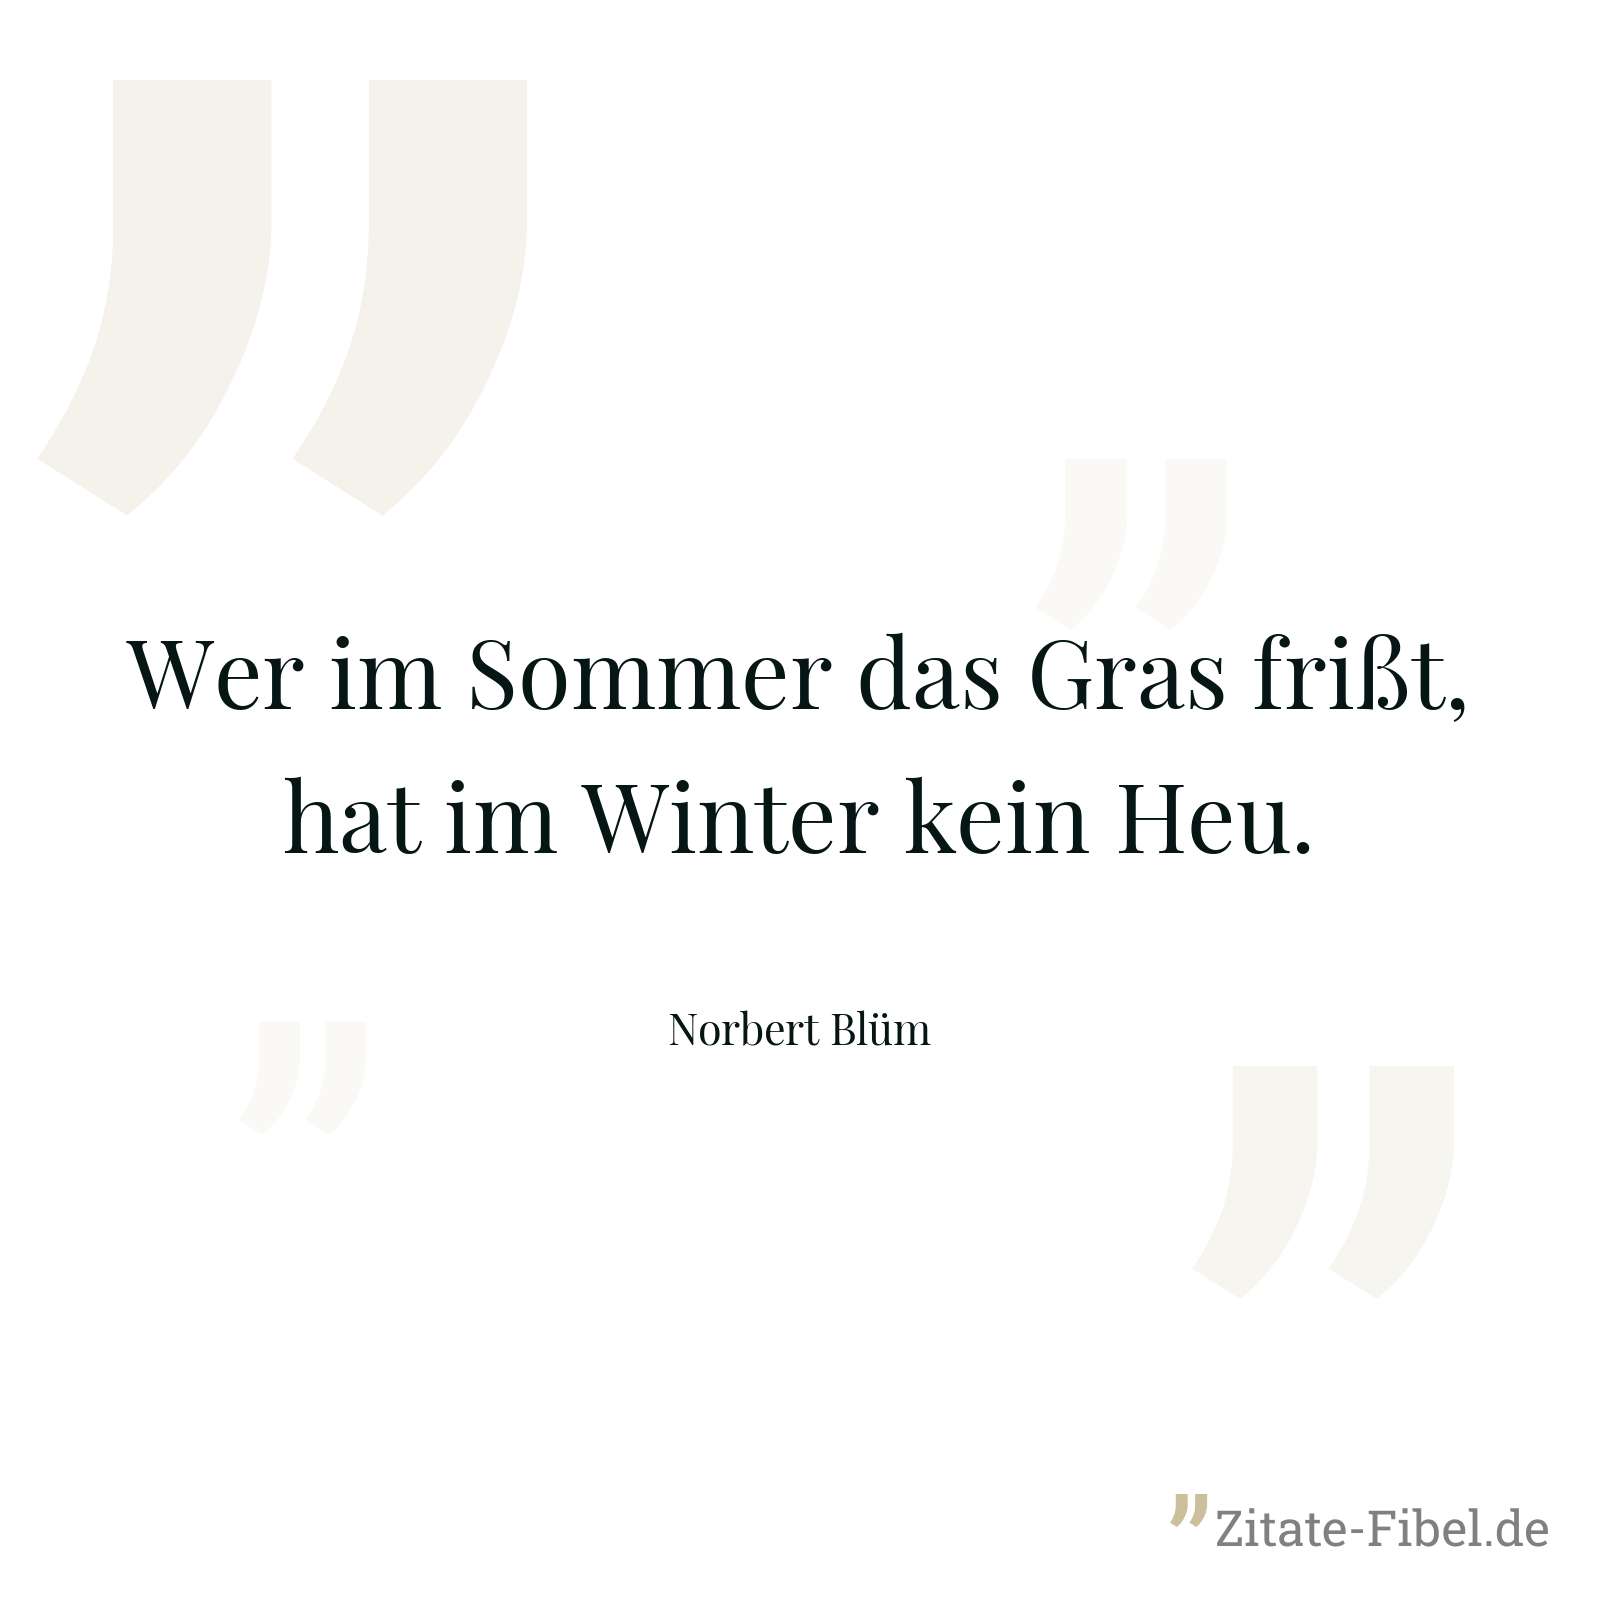 Wer im Sommer das Gras frißt, hat im Winter kein Heu. - Norbert Blüm